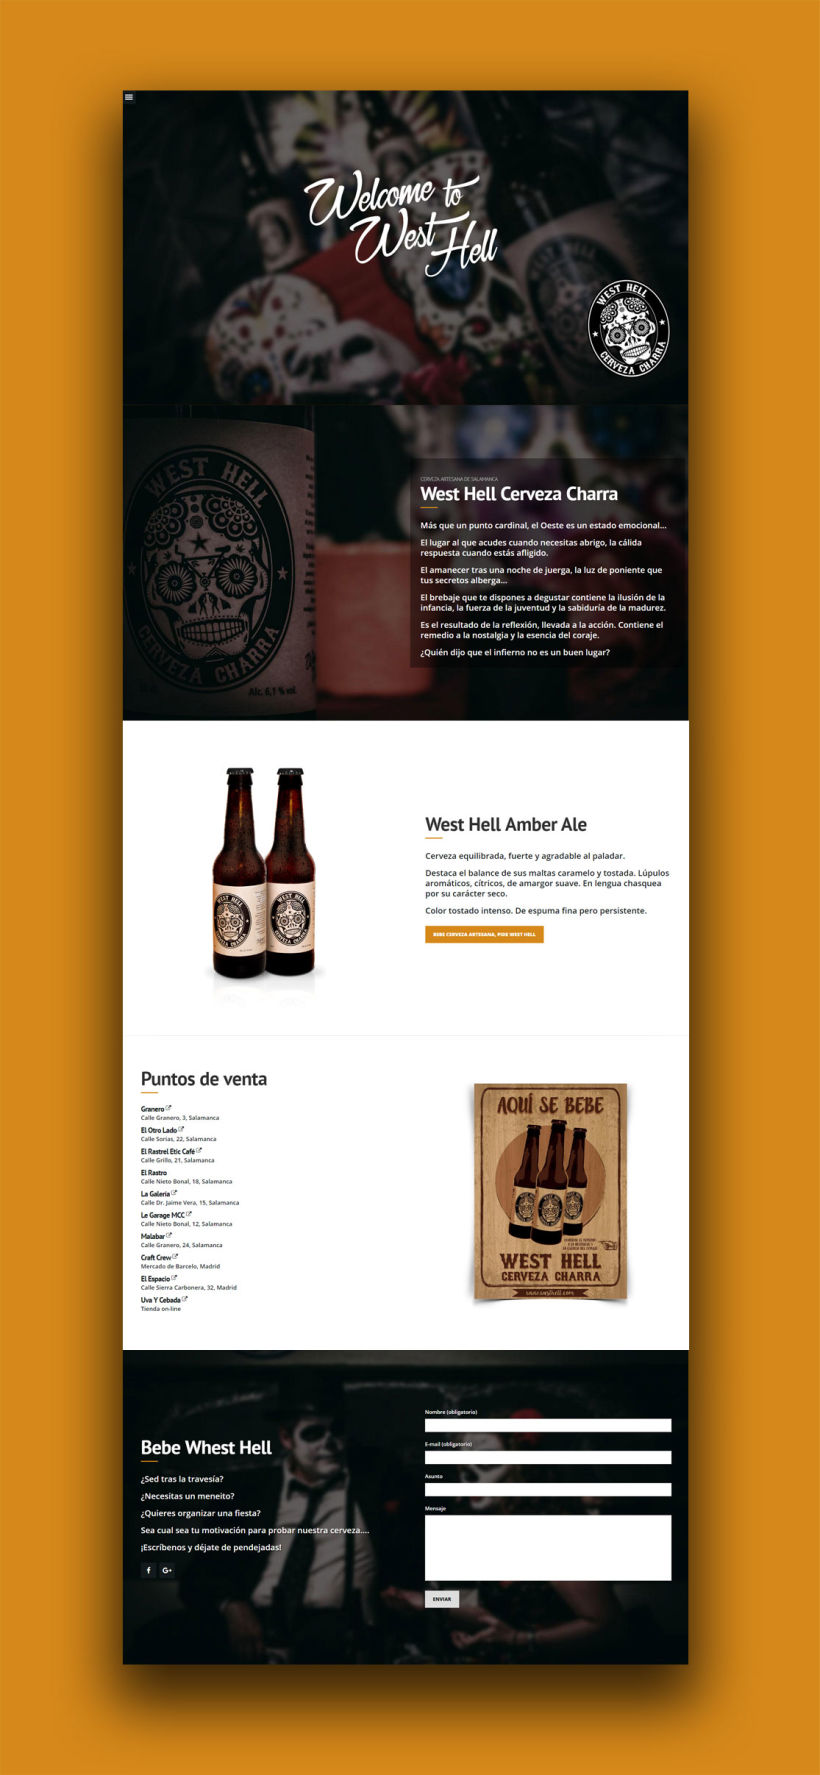 Diseño web y fotografía: West Hell Cerveza Charra 0